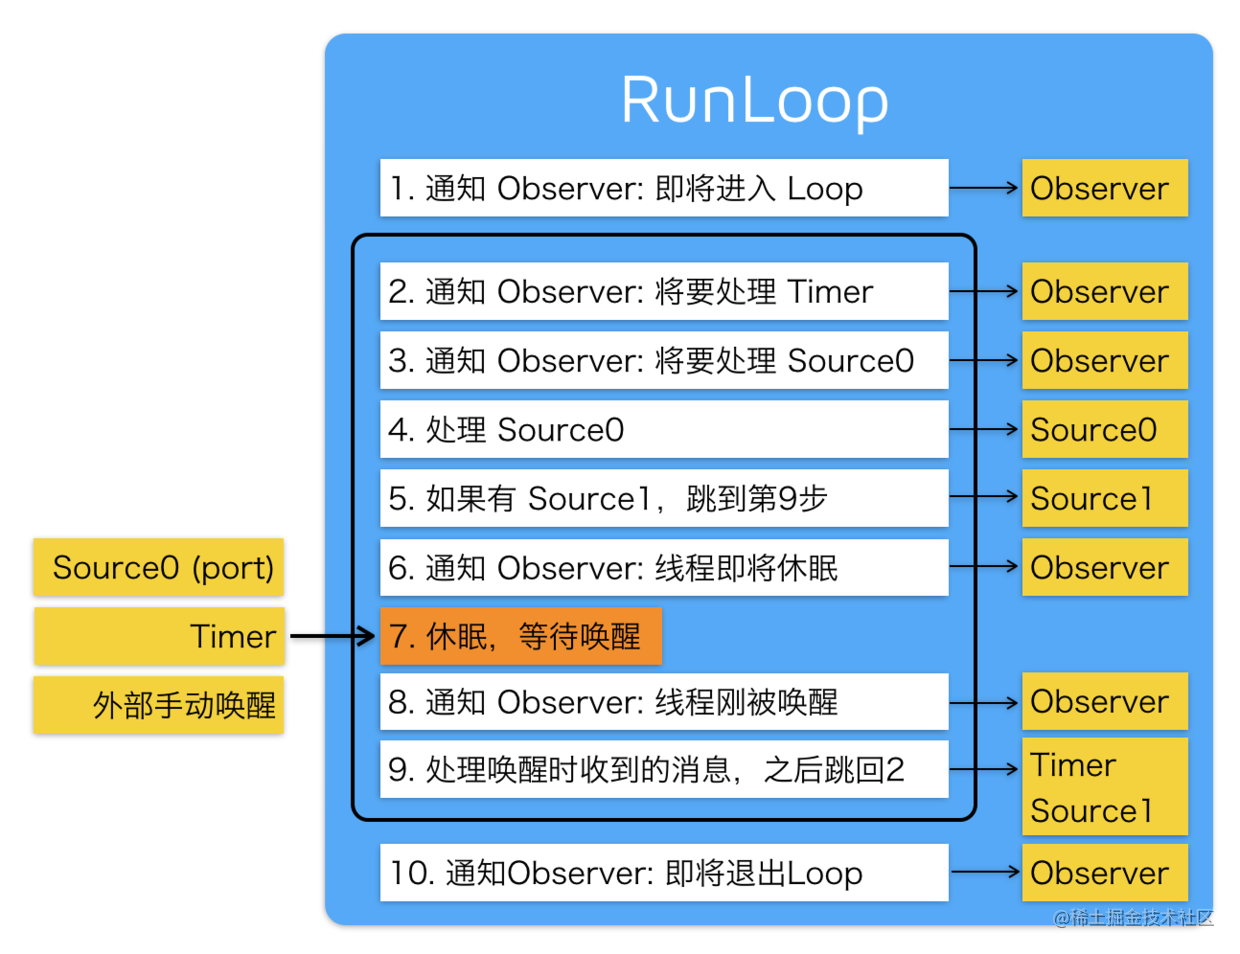 RunLoop运行逻辑图